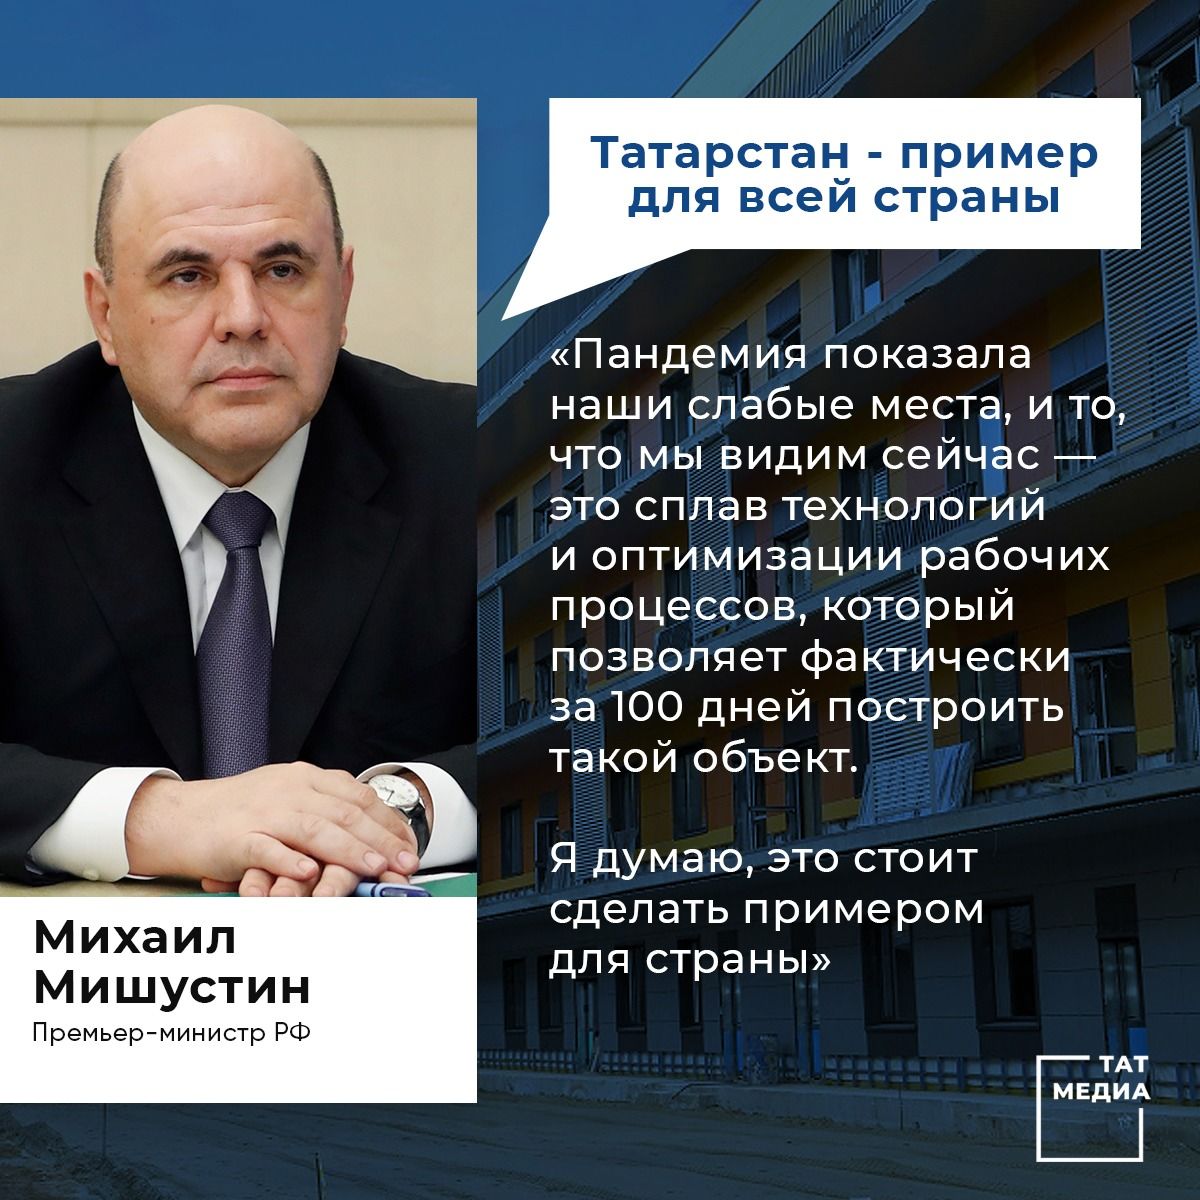 Мишустин подчеркнул вклад Татарстана в появлении ИТ-компаний